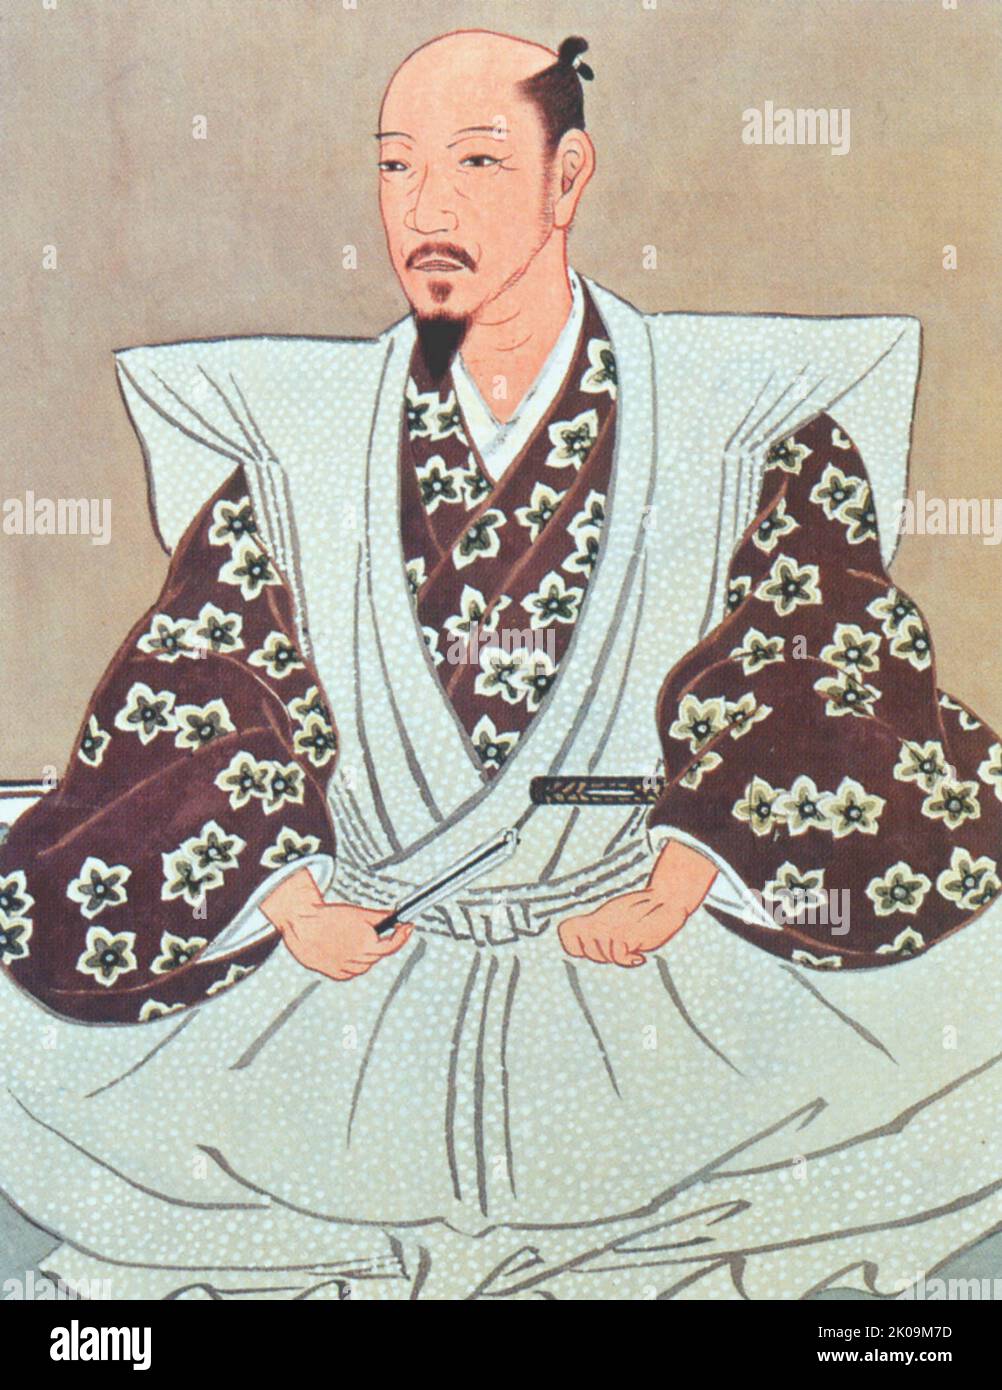 Kato Kiyomasa (1562 - 1611) Japanese daimyo of the Azuchi-Momoyama and Edo periods. His court title was Higo-no-kami. His child name was Yashamaru, and first name was Toranosuke. He was one of Hideyoshi's Seven Spears of Shizugatake. Stock Photo